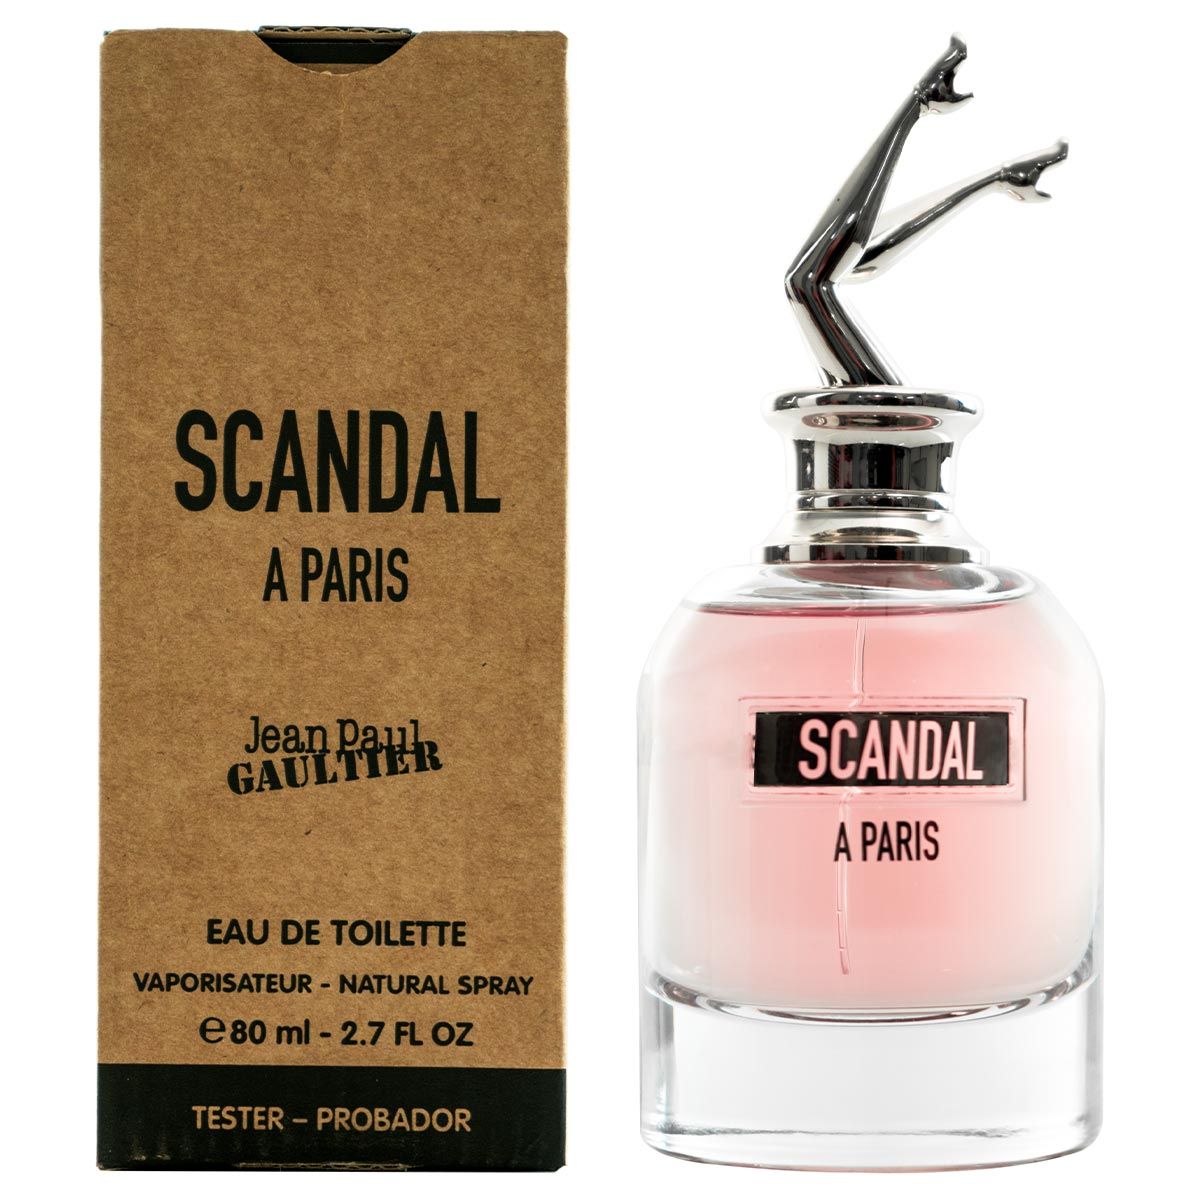  Jean Paul Gaultier Scandal A Paris 